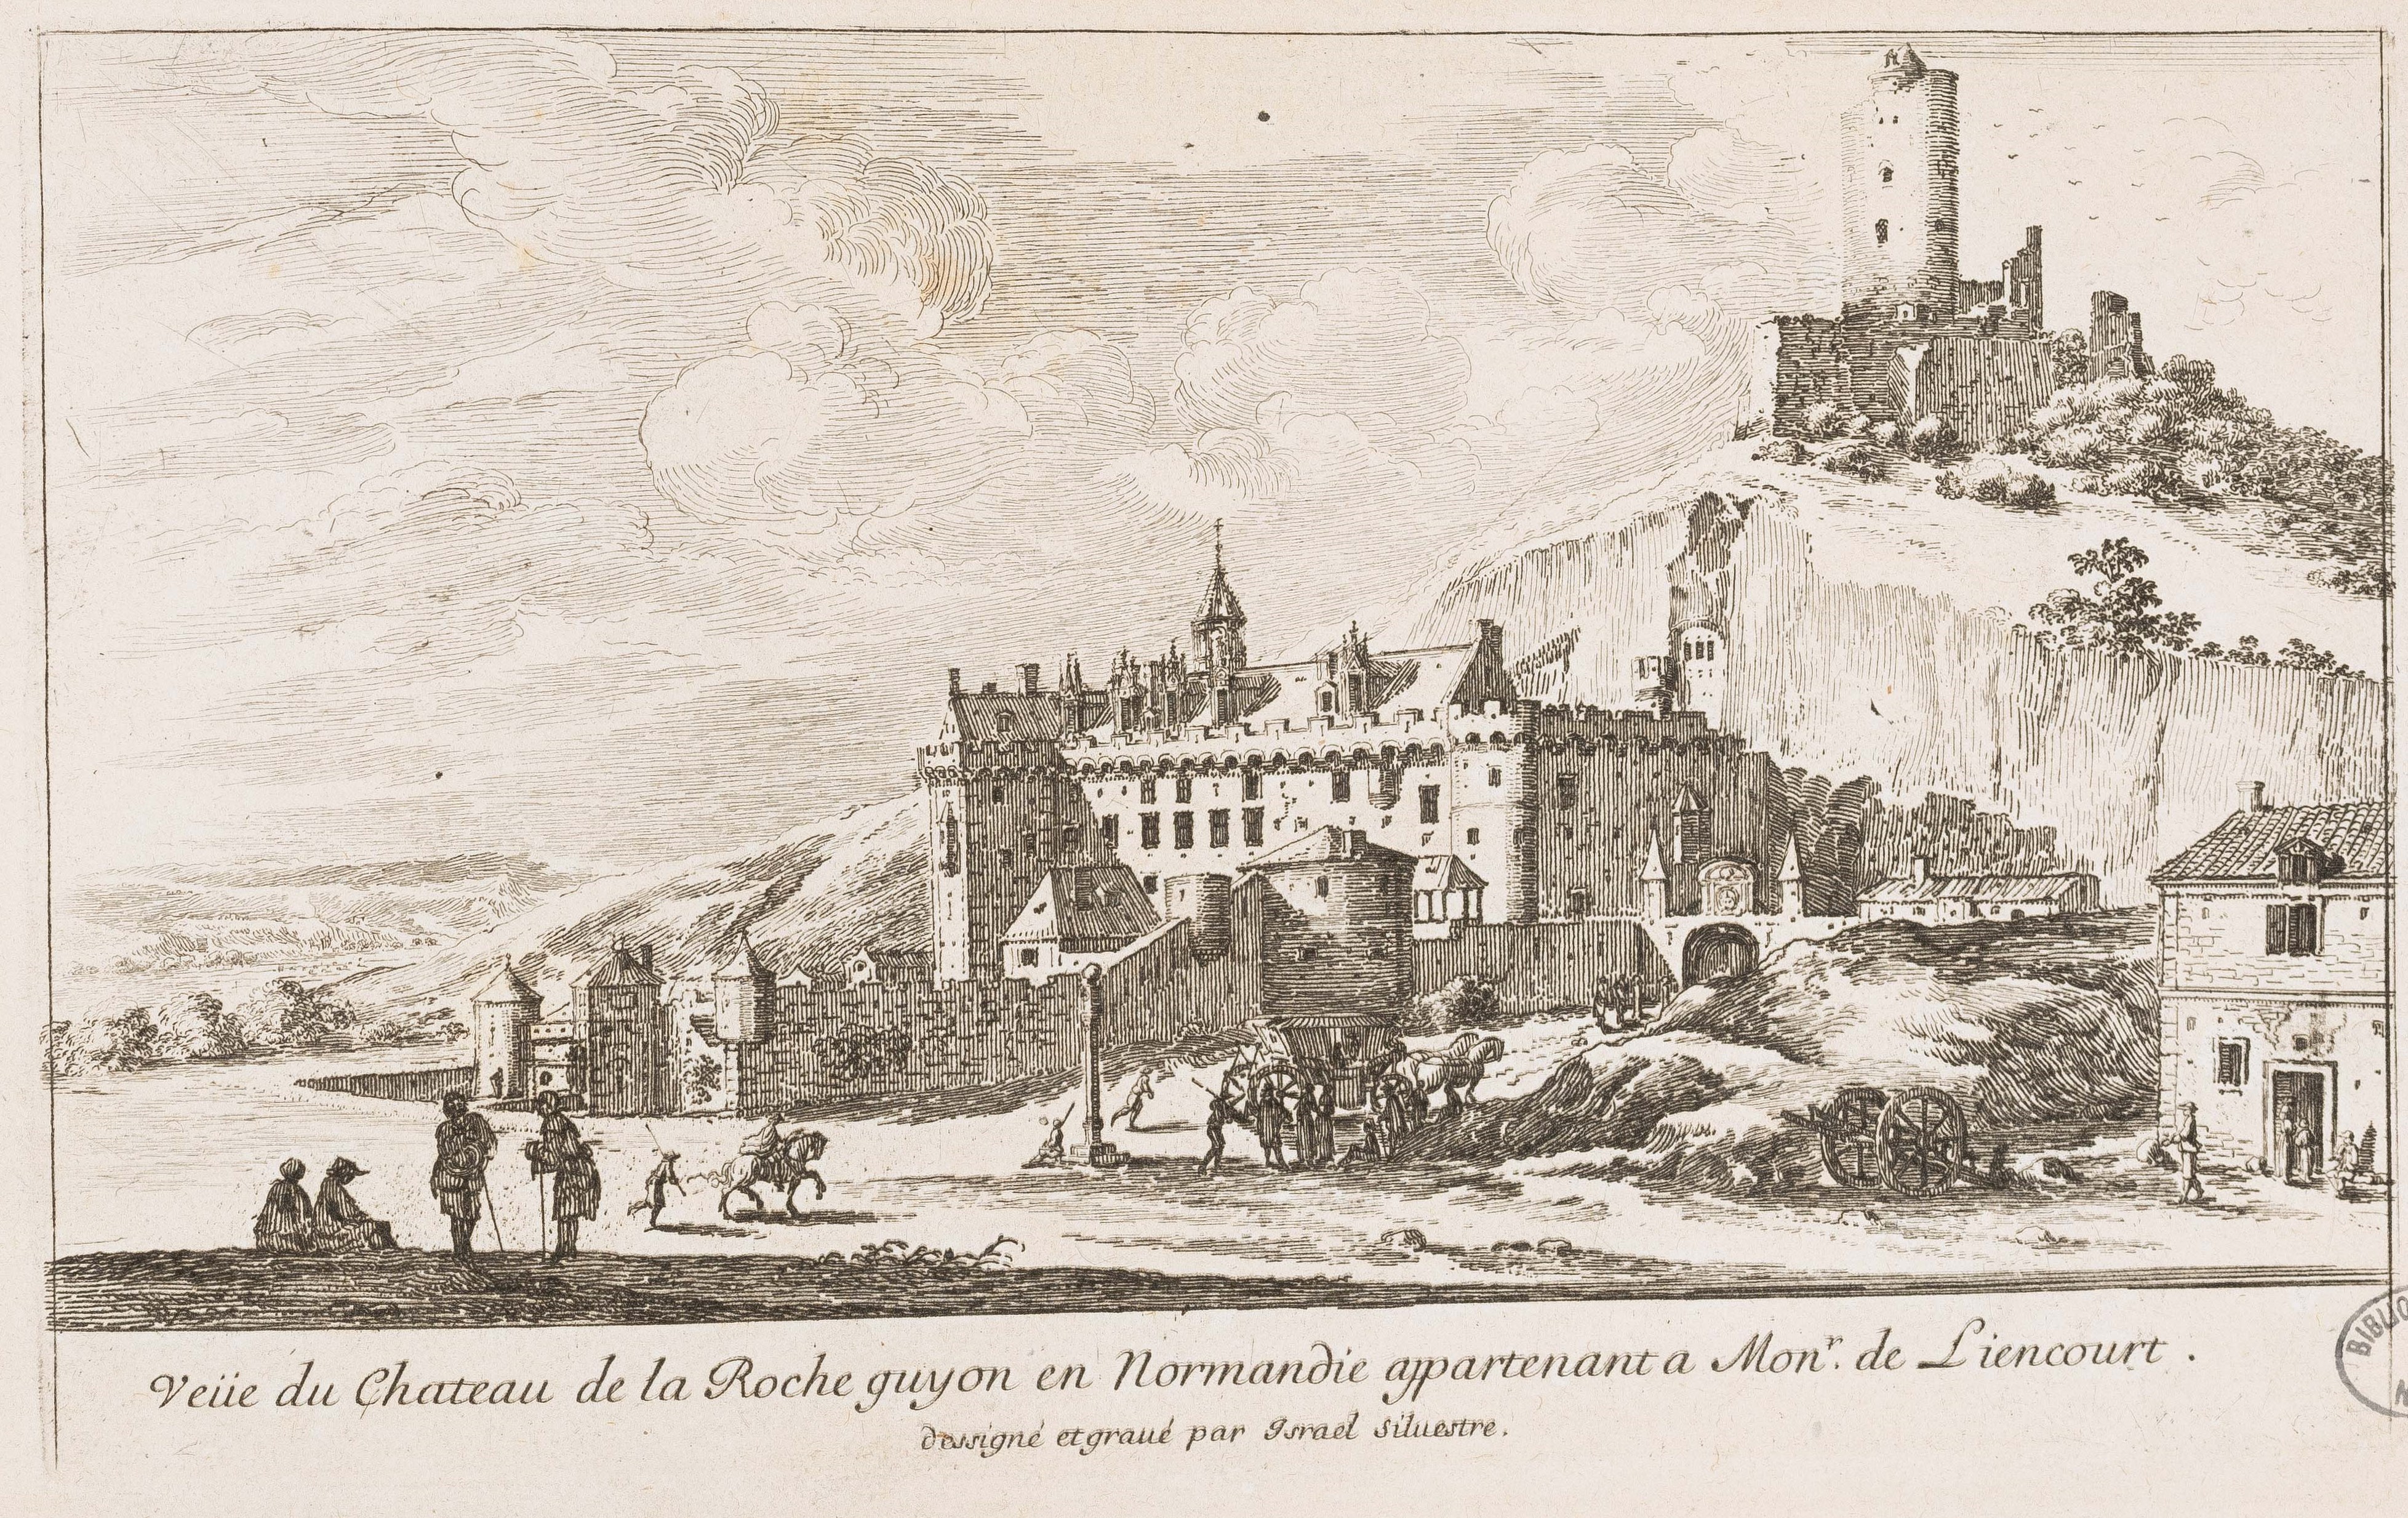 Israël Silvestre : Veüe du Chateau de la Roche guyon en Normandie appartenant a Monr. de Liencourt.